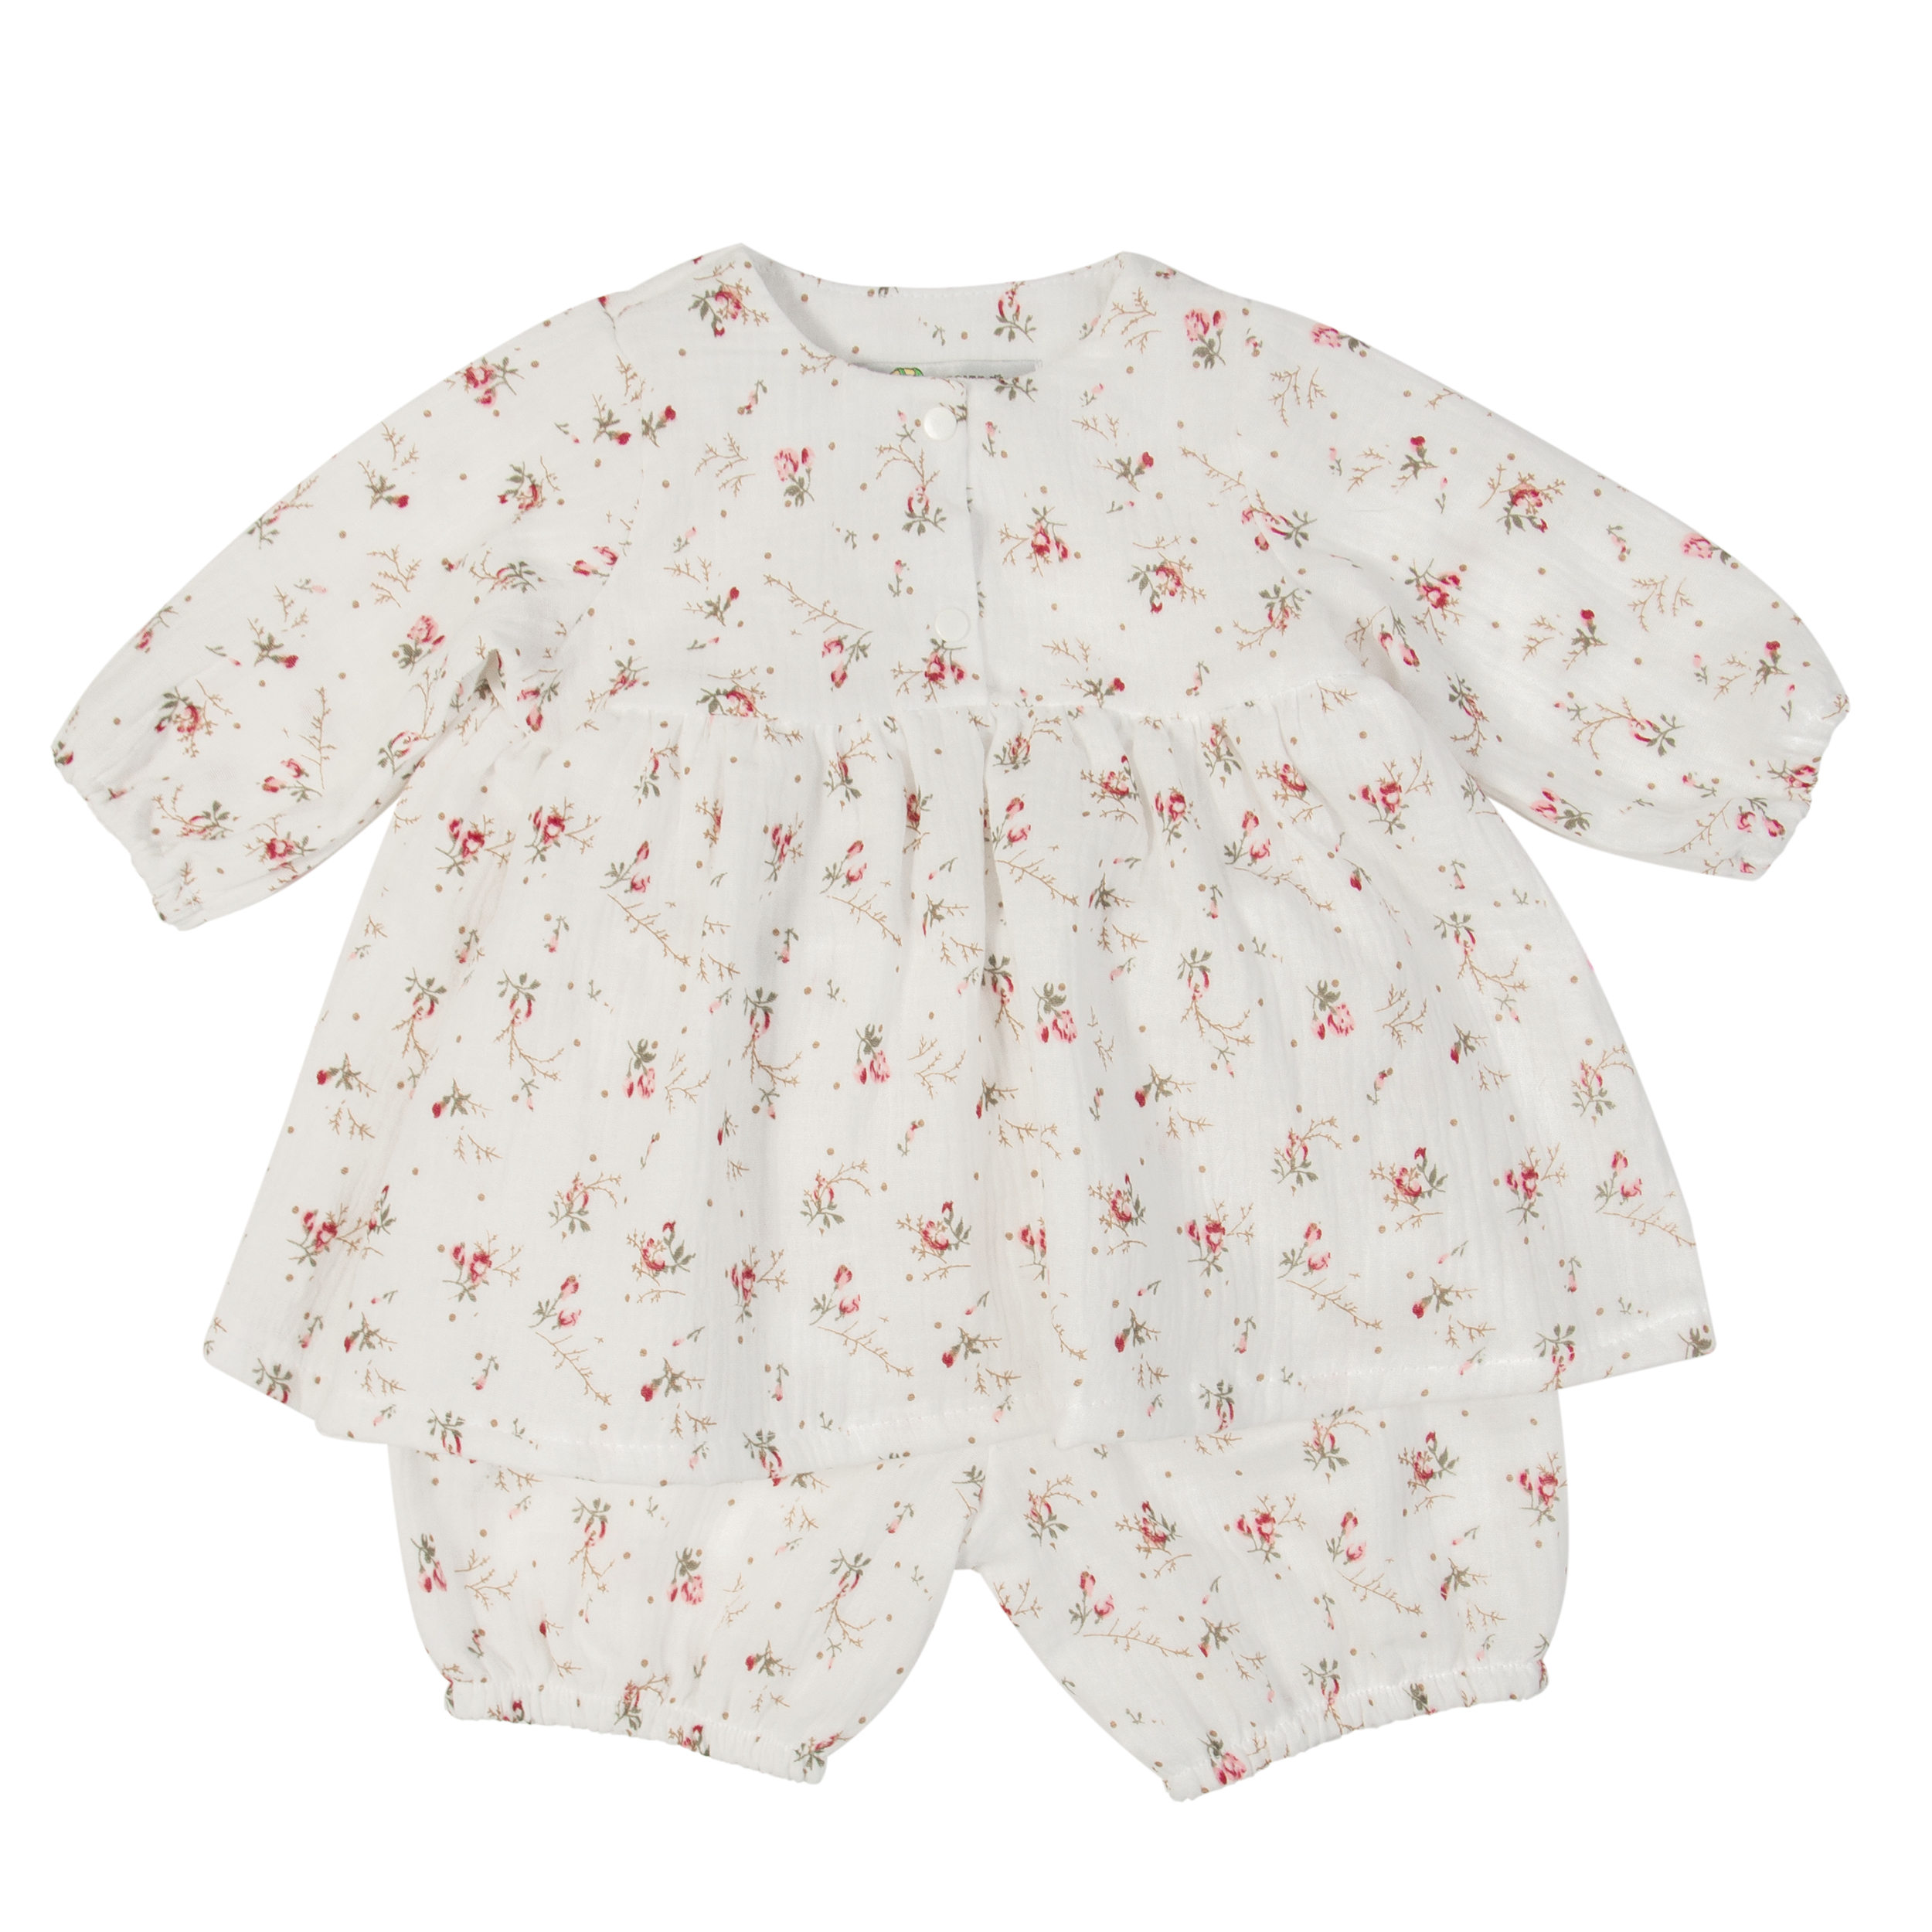 Комплект одежды детский Сонный гномик Сакура, белый, 74